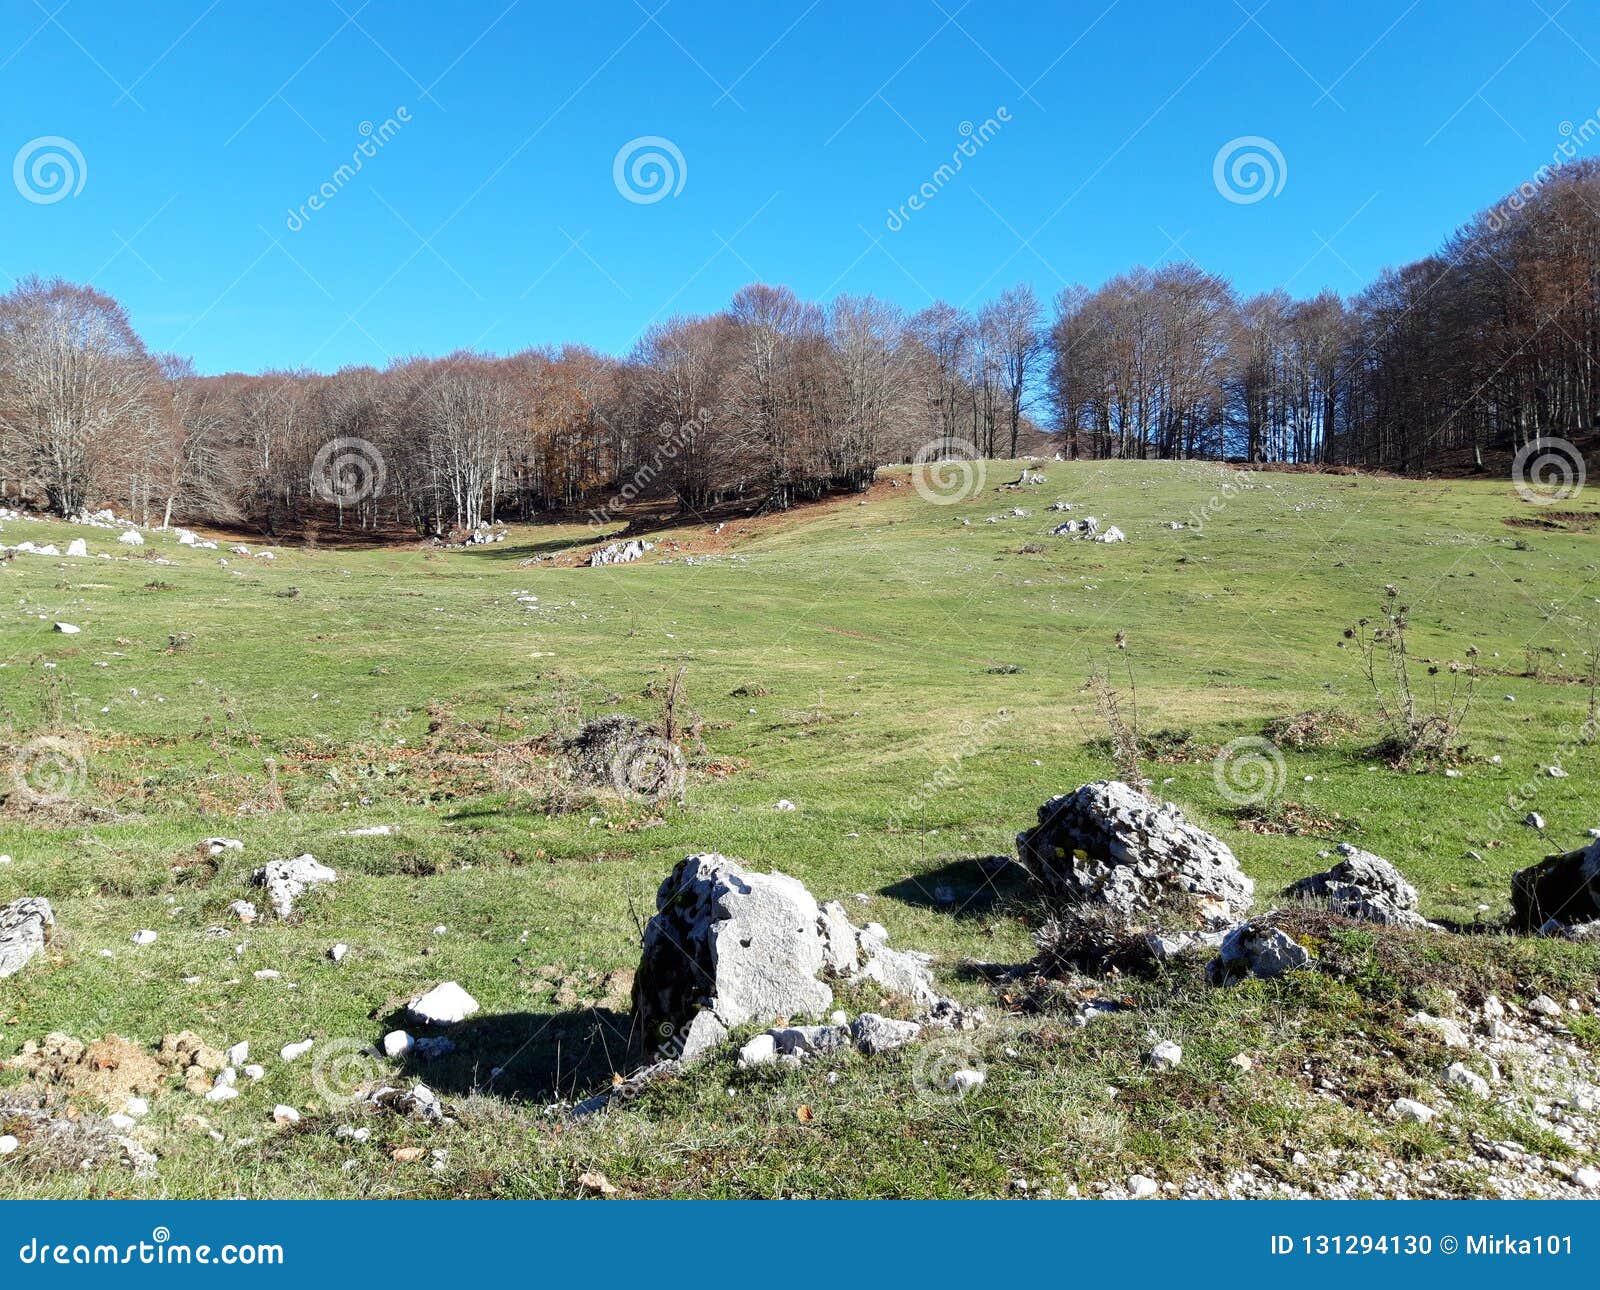 bucolic landscape near rome, campaegli